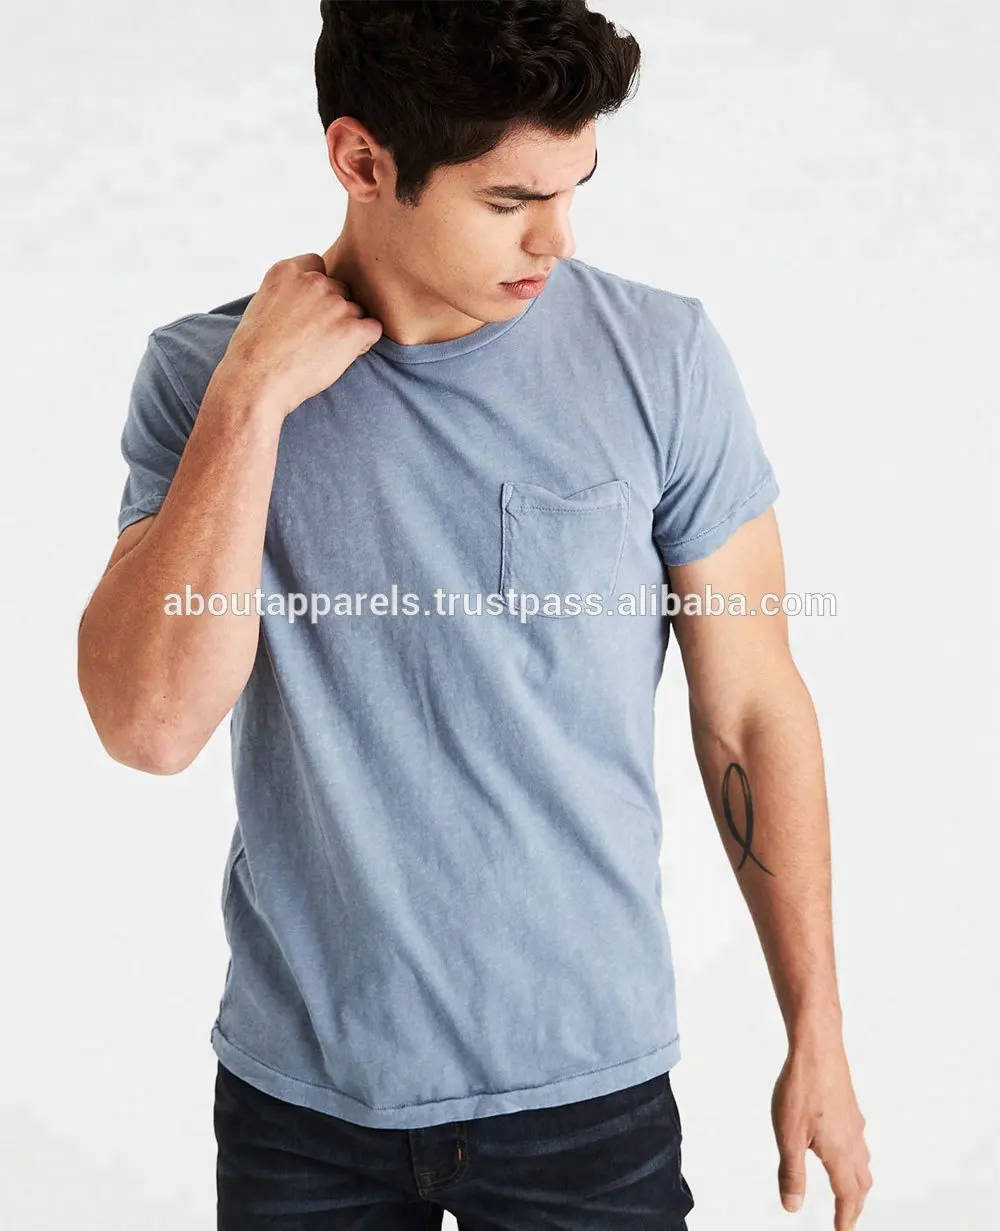 Tejidos de alta calidad Super suave costura camisetas de manga corta de los hombres t camisa/barato al por mayor 100% de algodón suave